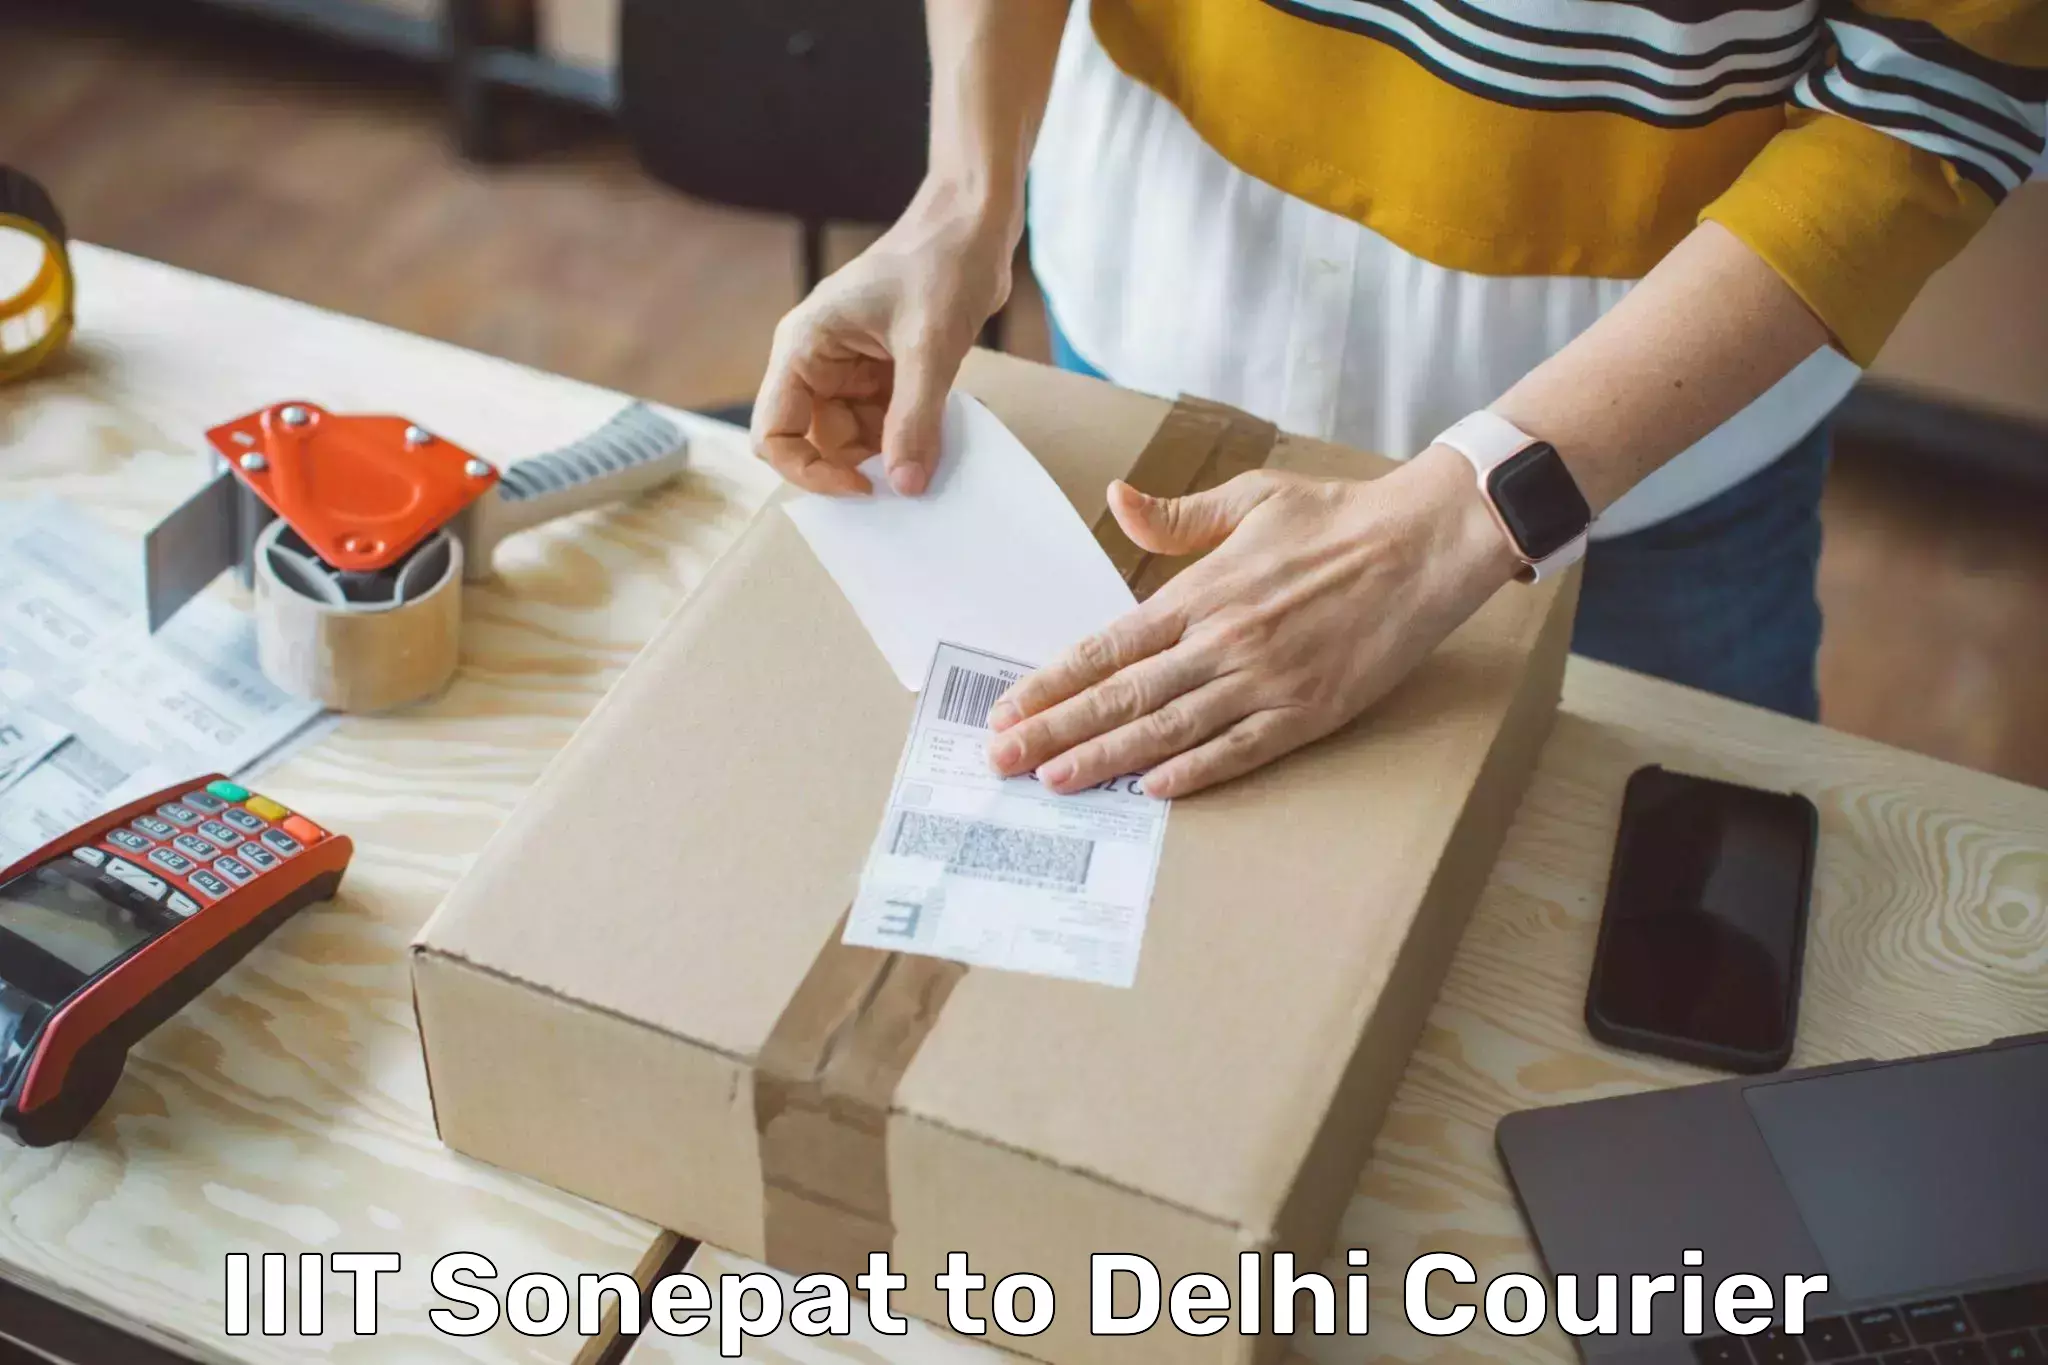 Modern delivery technologies IIIT Sonepat to IIT Delhi